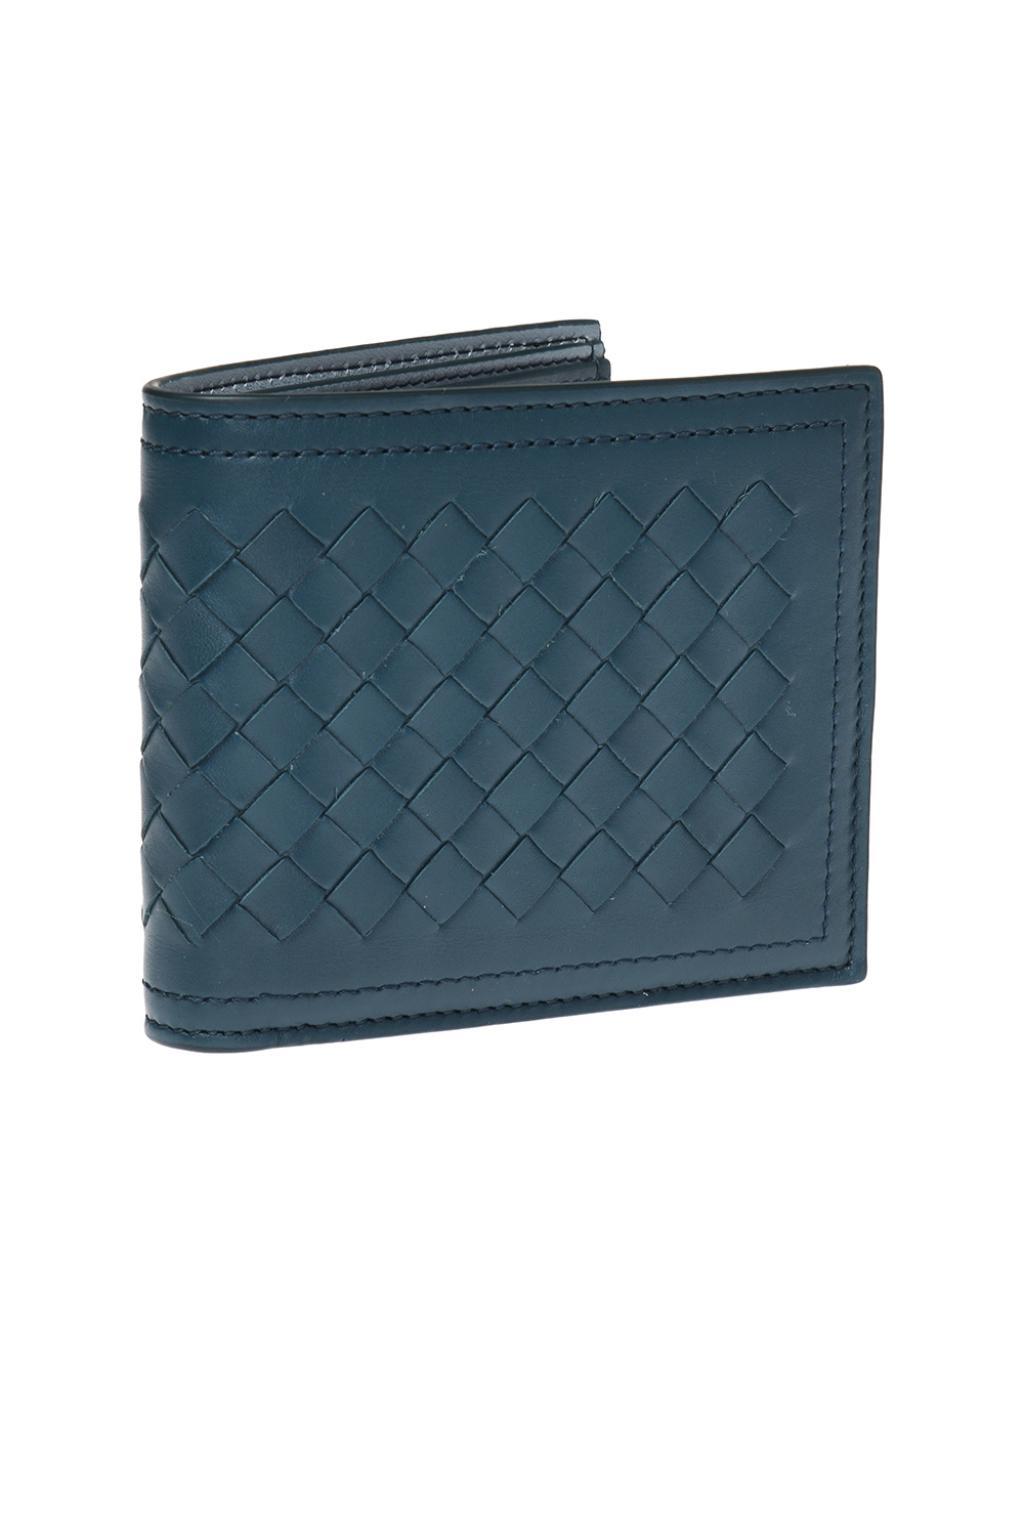 Bottega Veneta Leather 'intrecciato' Pattern Bi-fold Wallet in Blue for ...